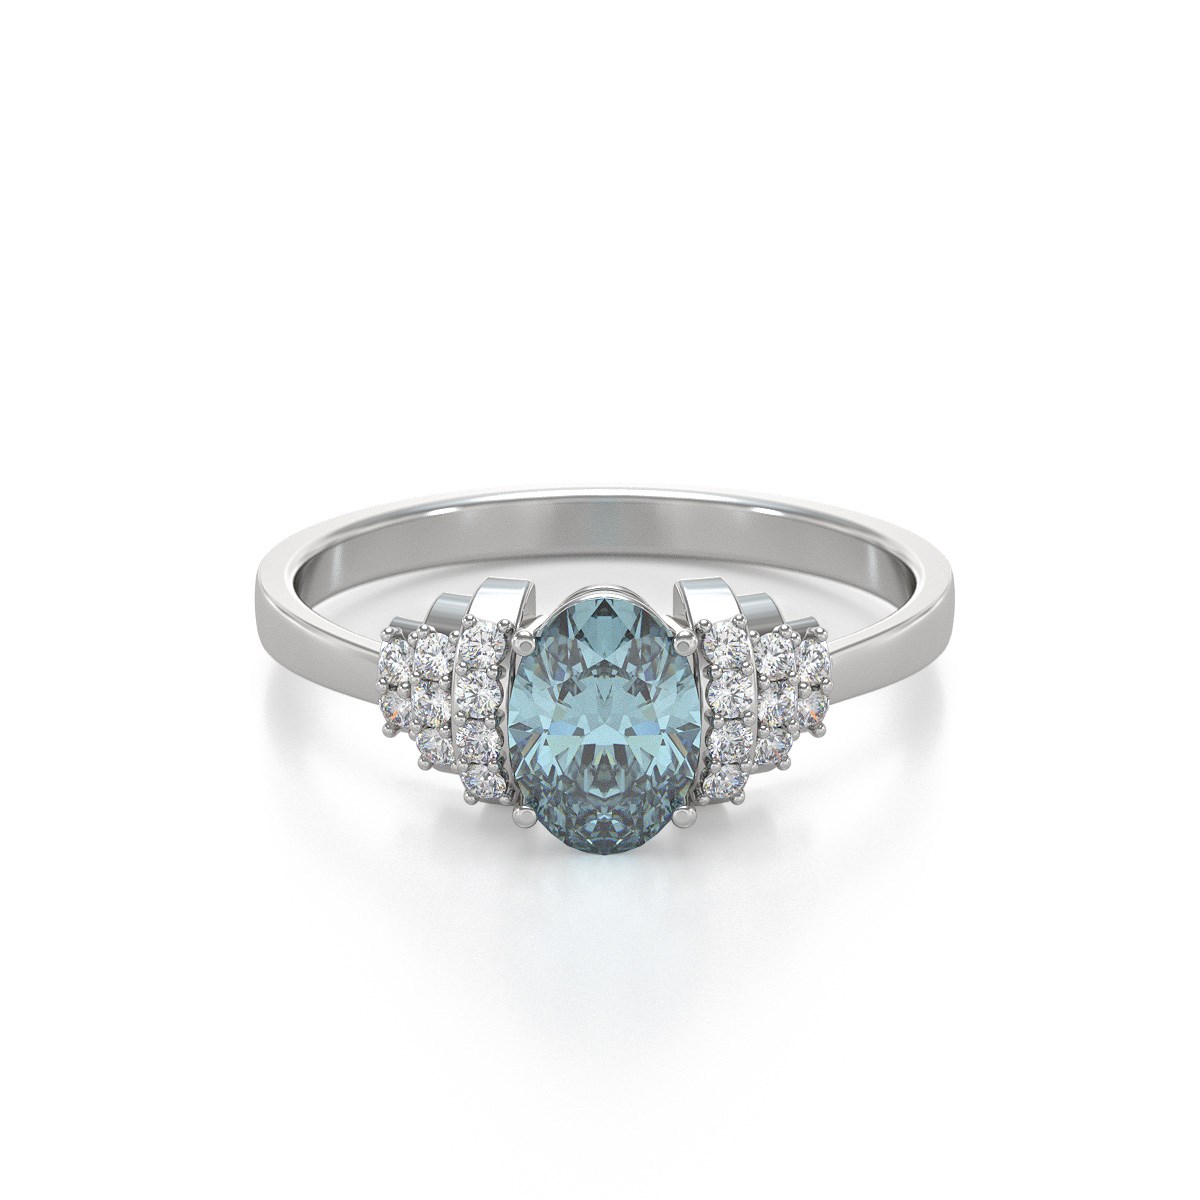 Bague aigue-marine et diamants en argent 925 : un bijou luxueux et raffiné | Aden Boutique - vue 3